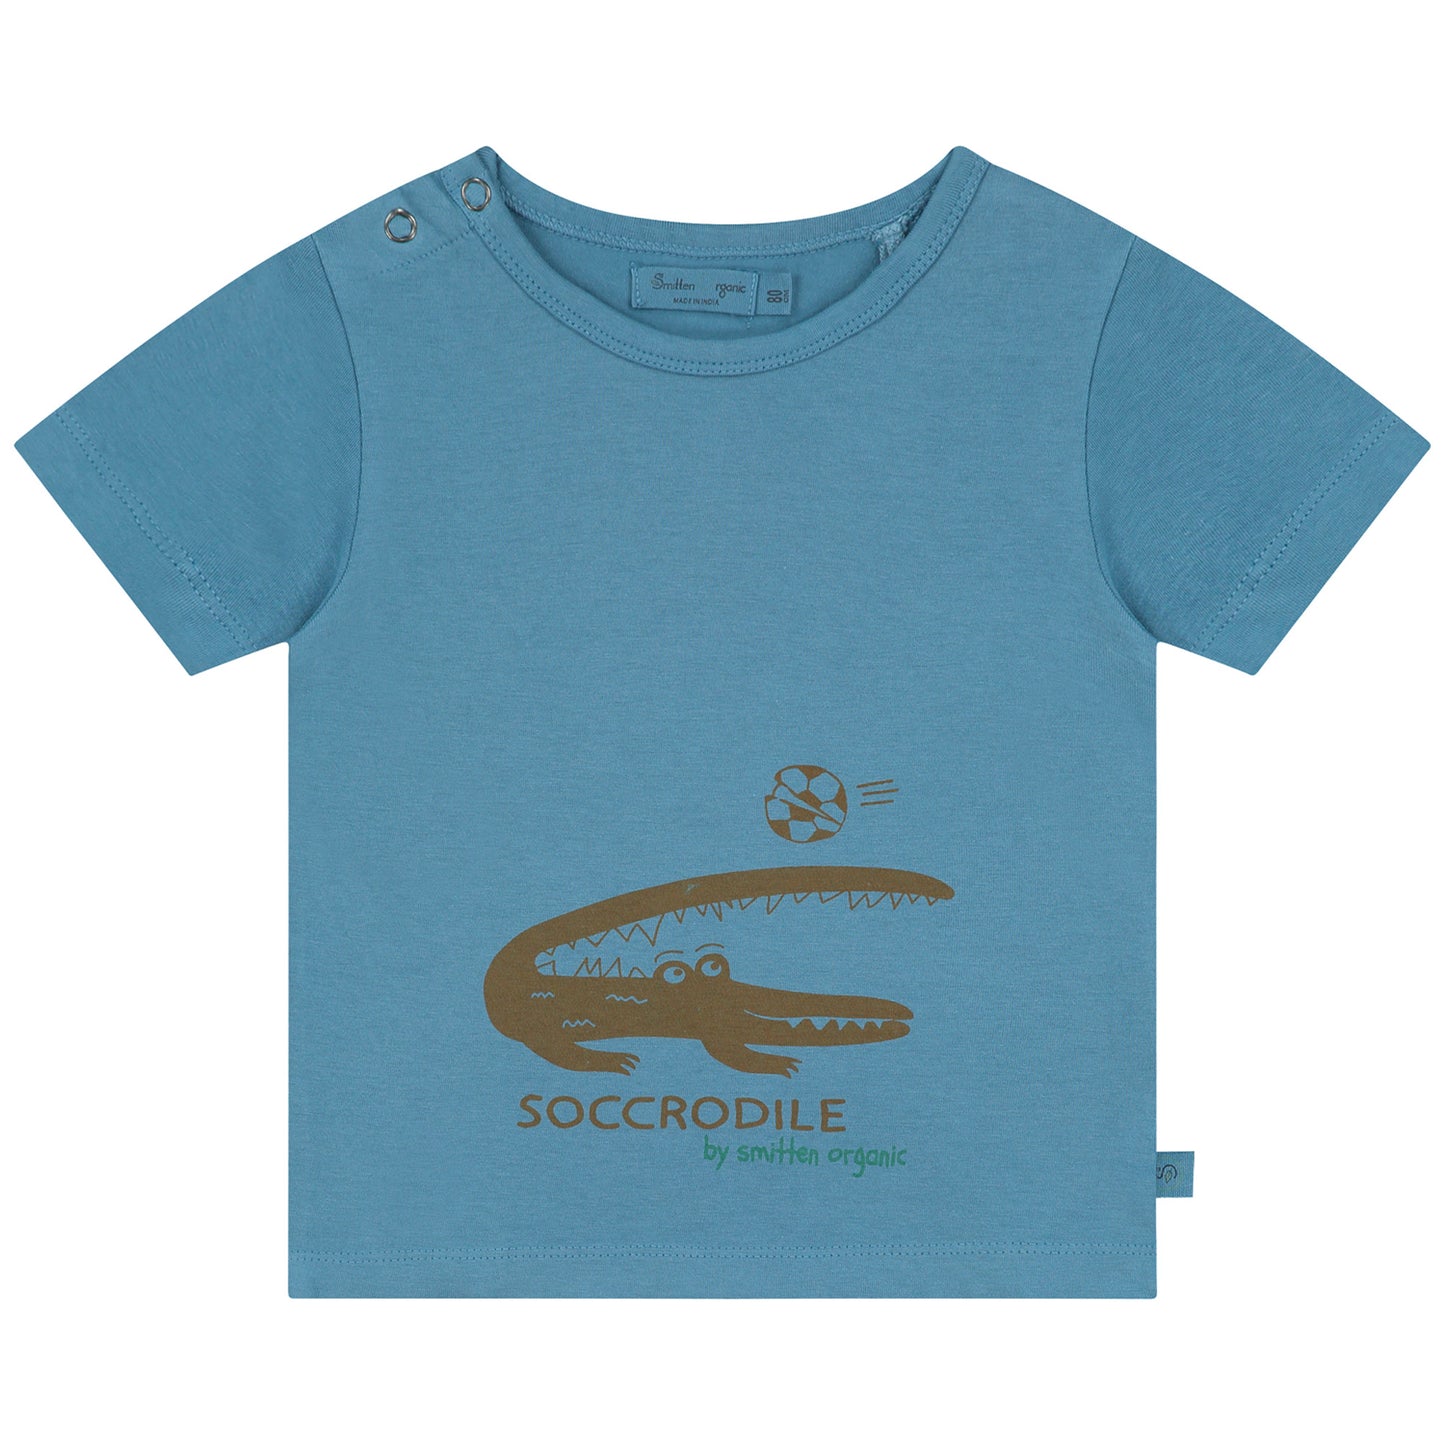 Krokodil die voetbal speelt Unisex T-shirt